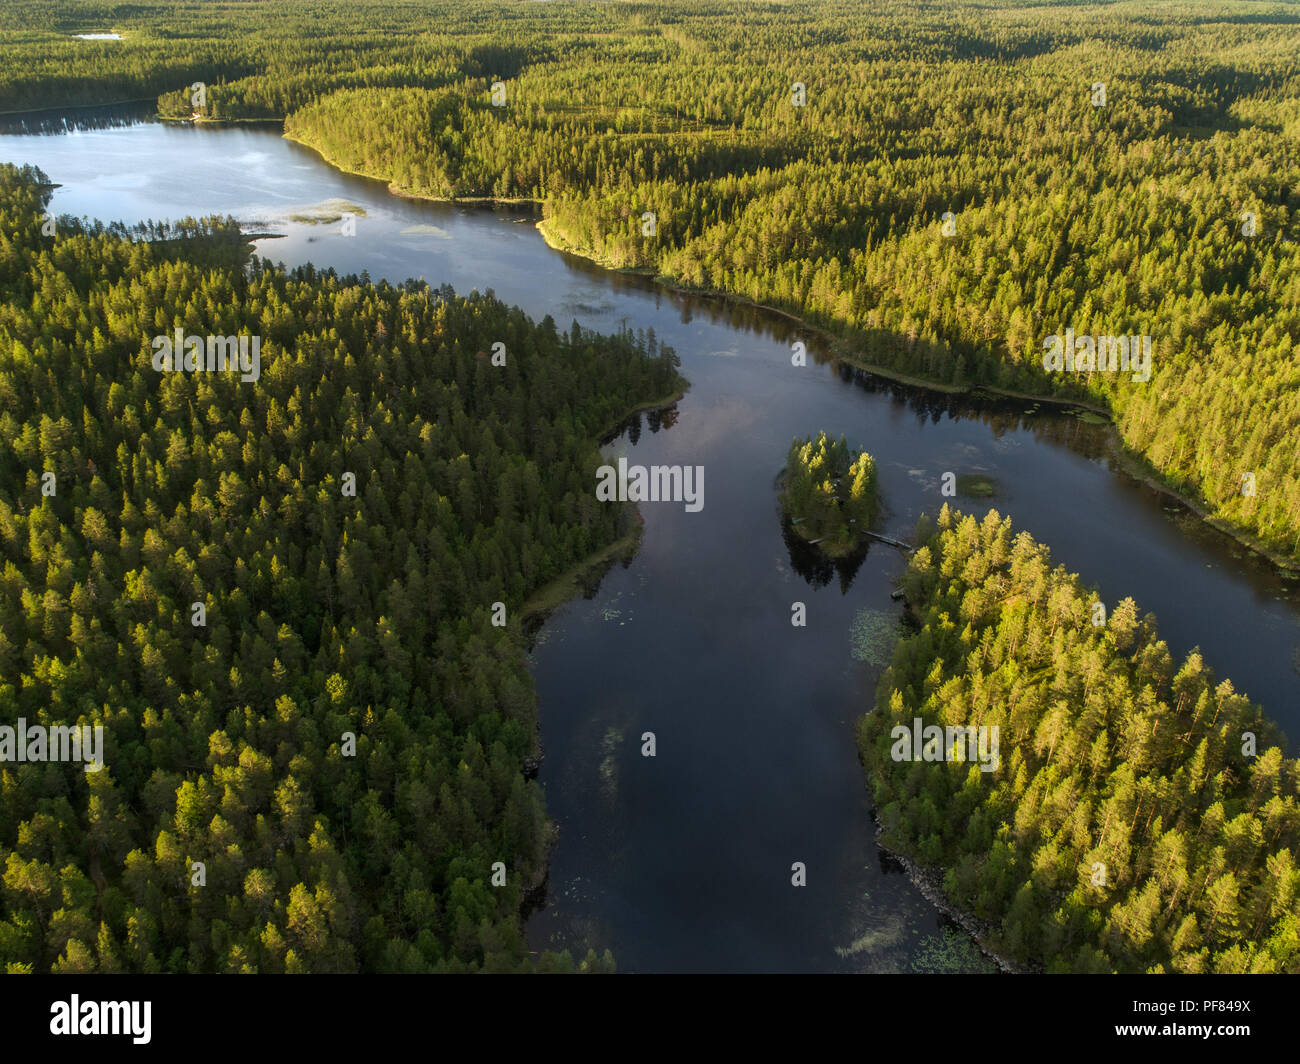 Vue aérienne d'un lac entouré d'une dense forêt boréale Taïga aka dans le Parc National d'Oulanka, Finlande Banque D'Images